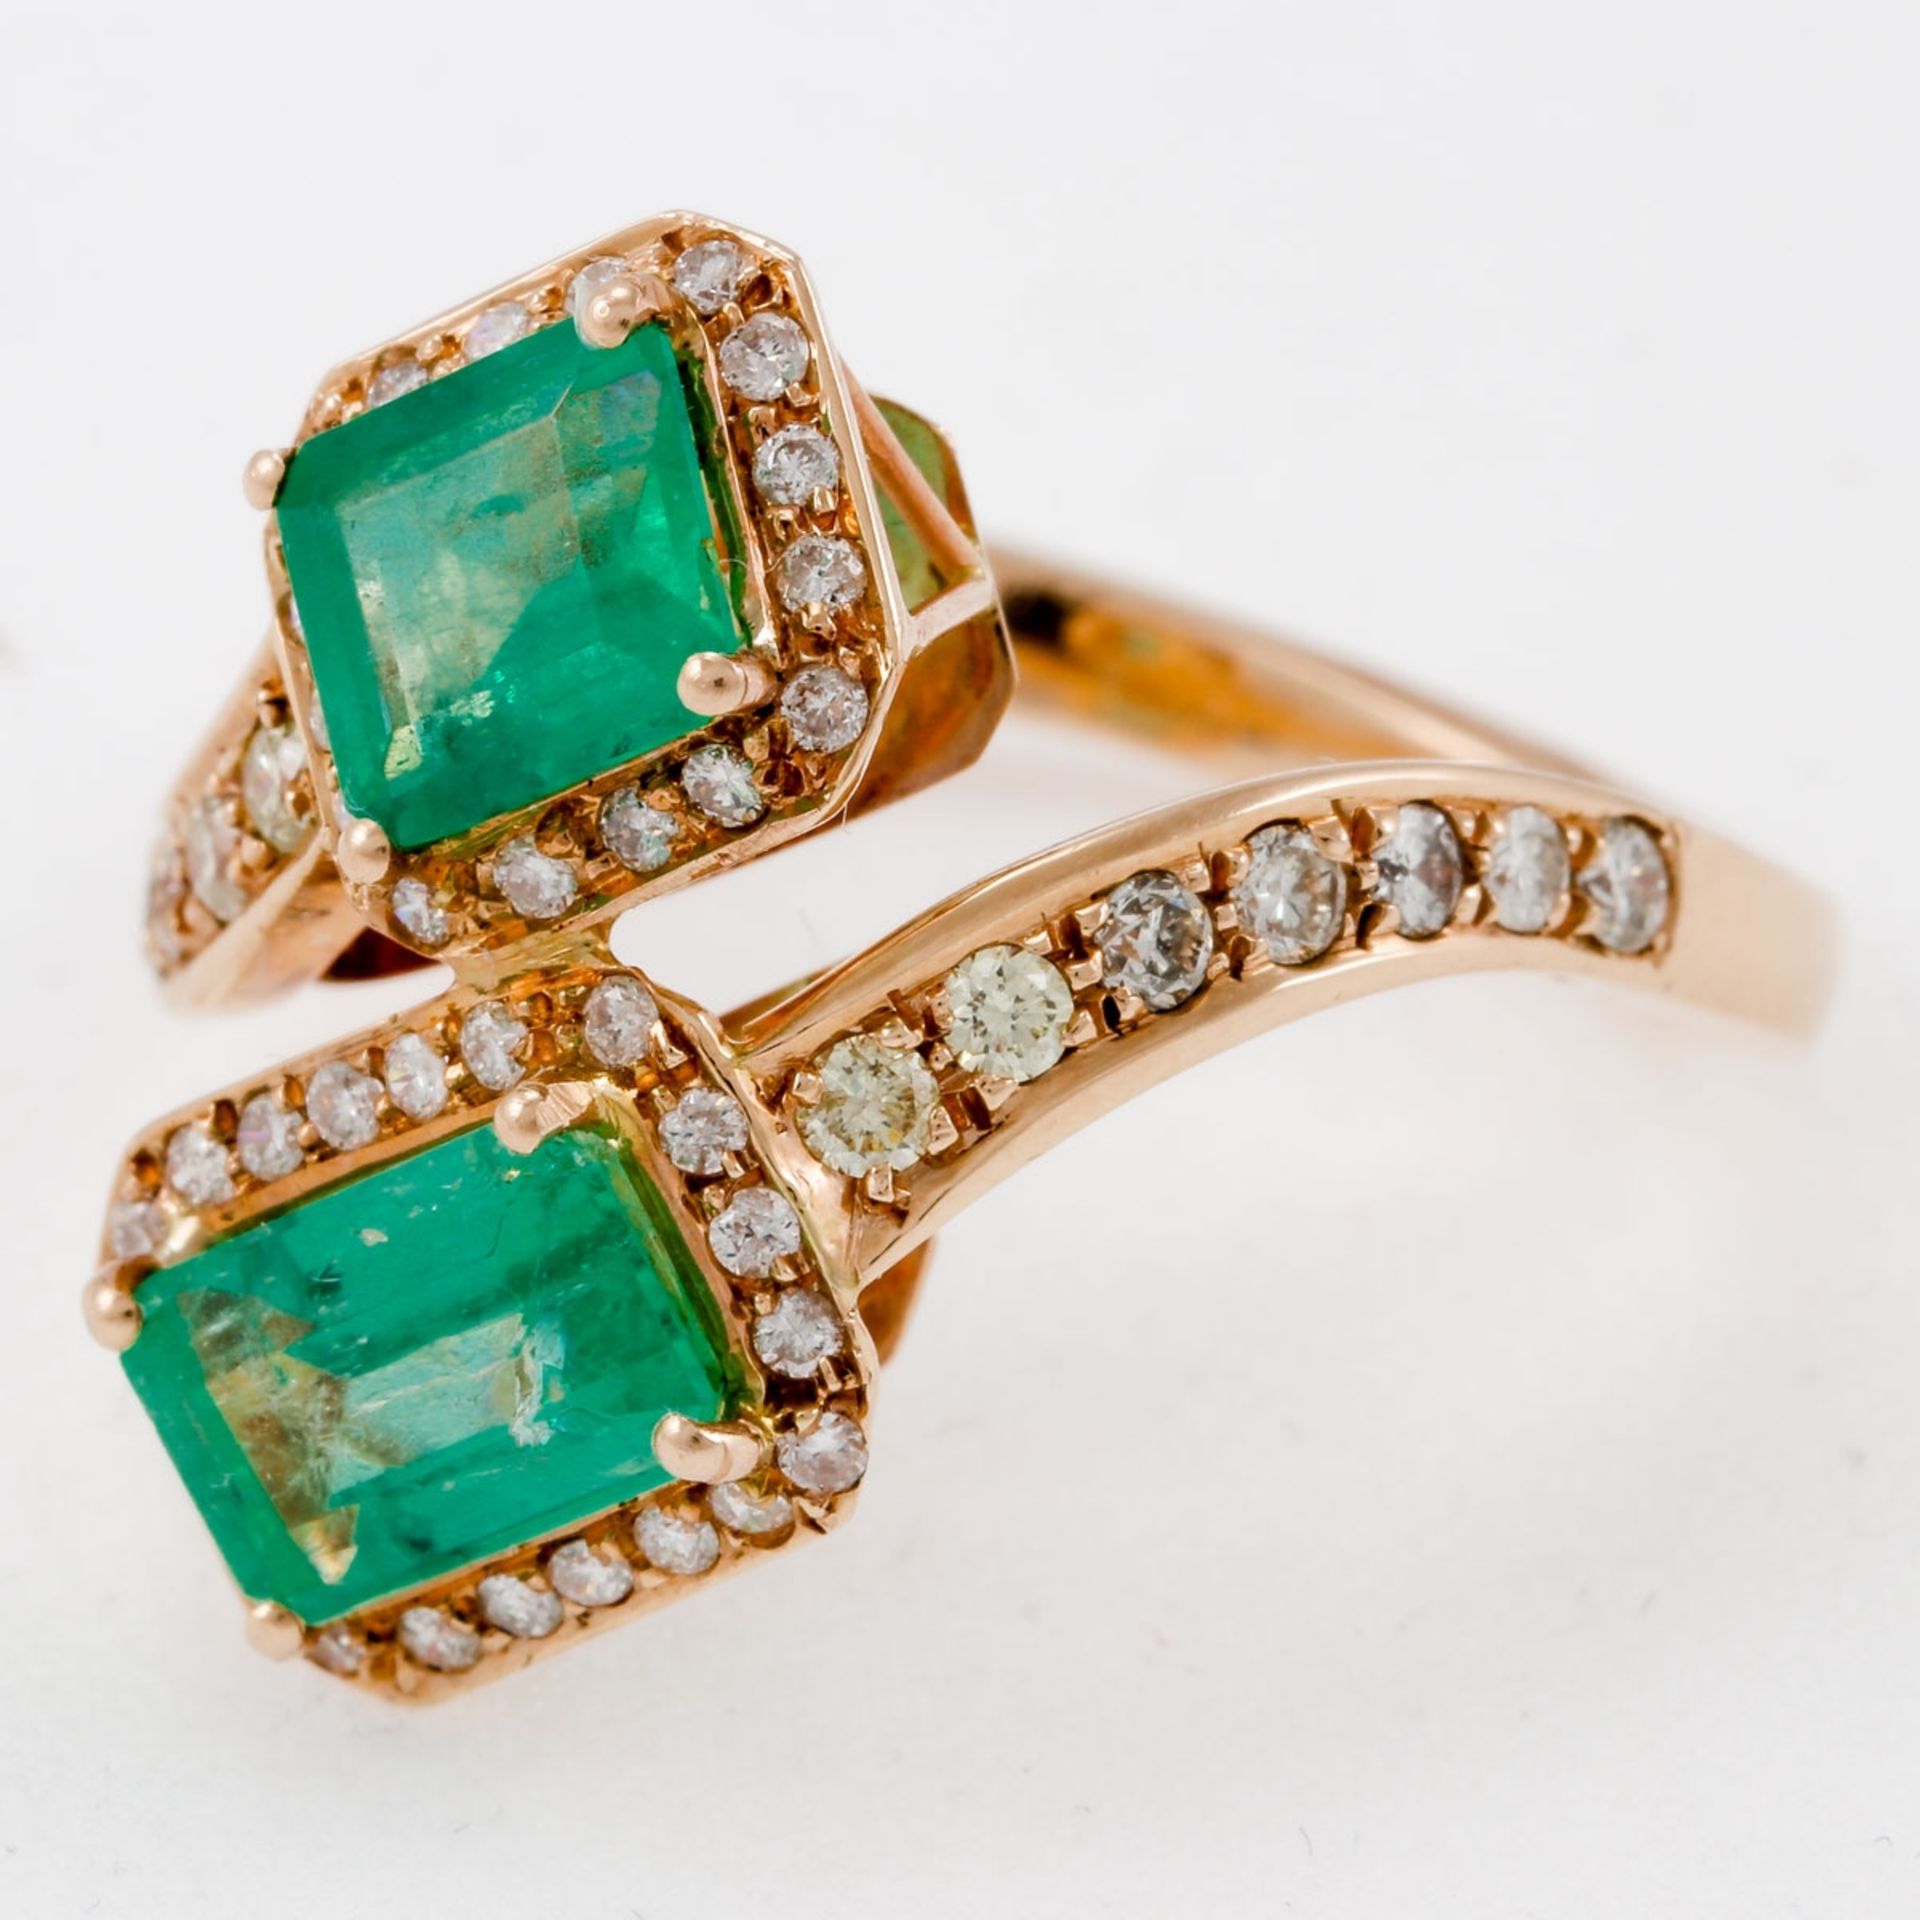 Toi-et-Moi Ring mit Smaragden und Brillanten 585/- Roségold, gestemp. Gewicht: 6,3 g. 2 Smar - Image 2 of 2